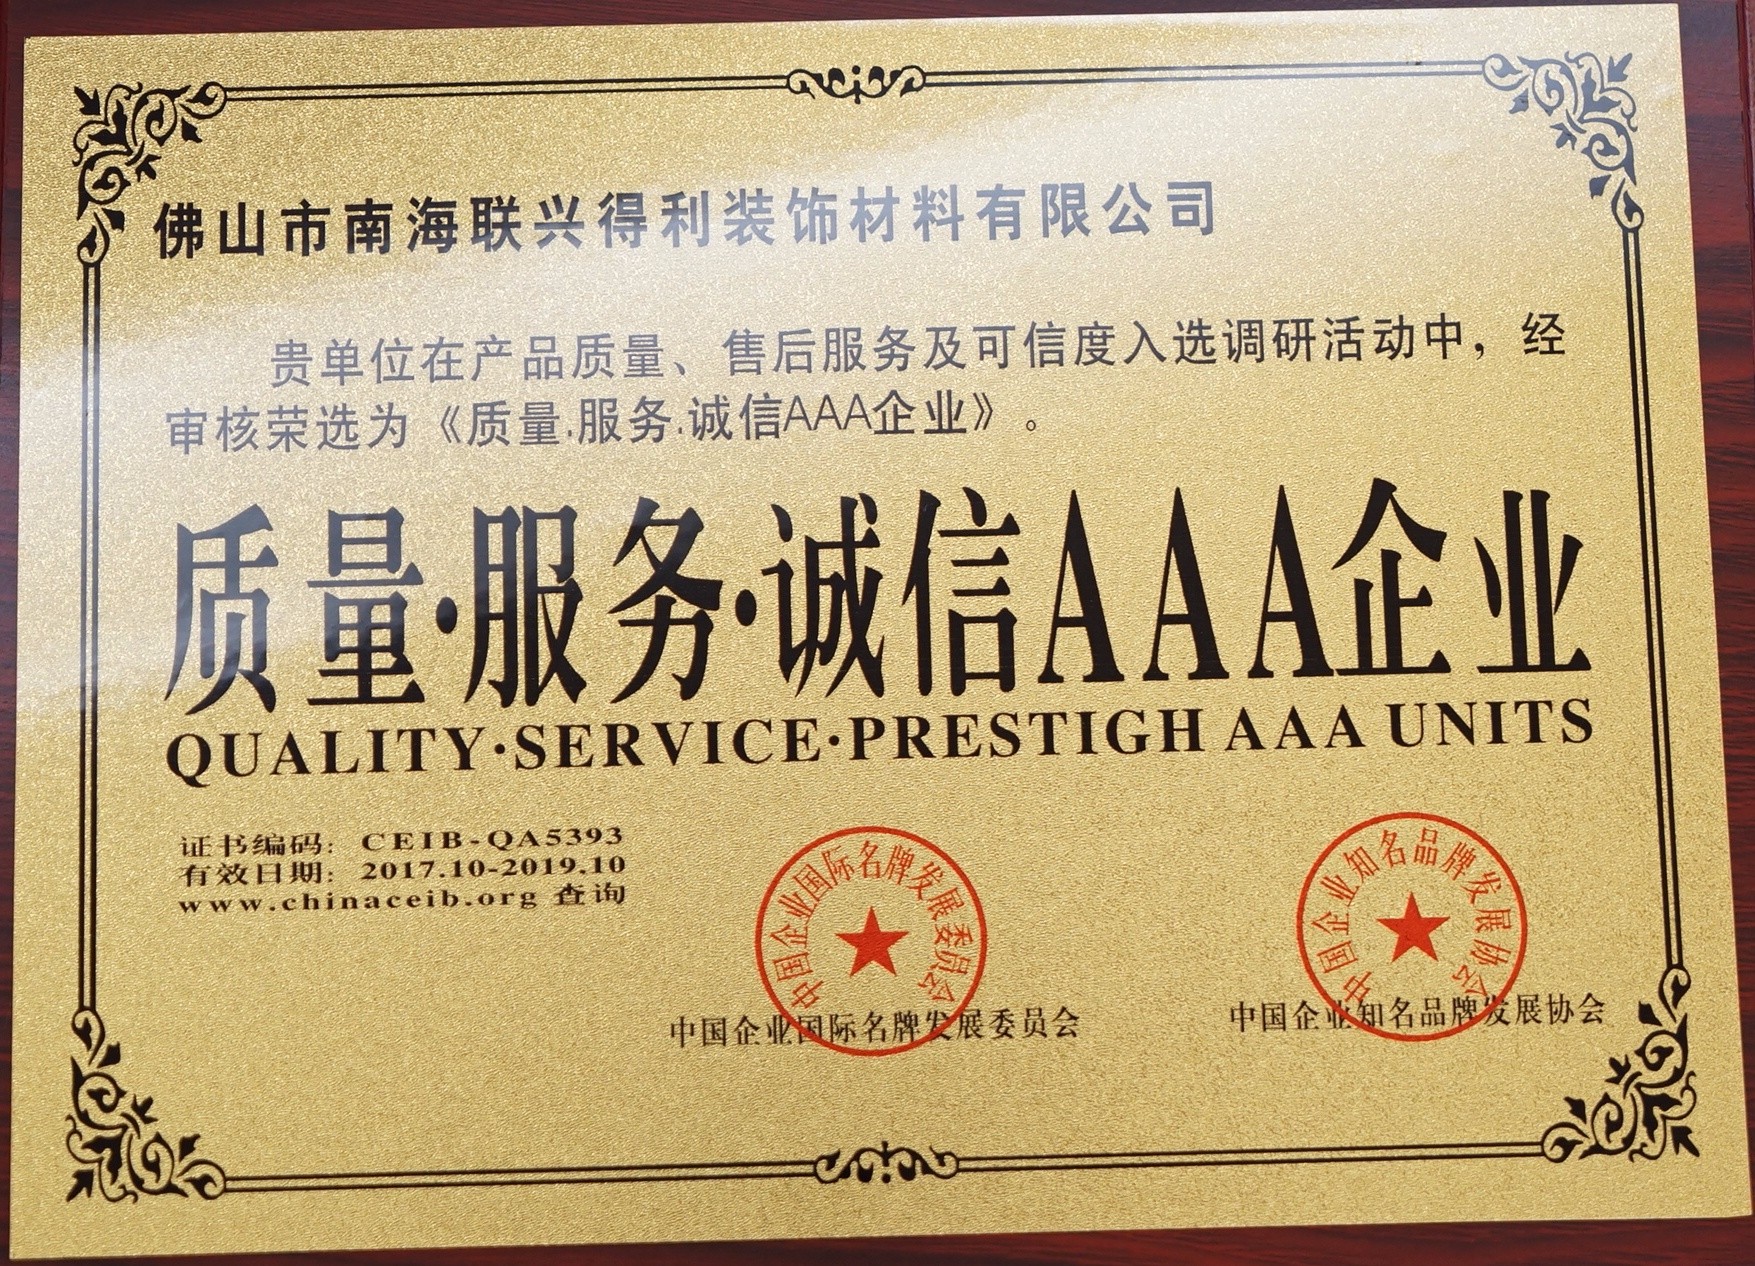 Calidad y Servicio y Unidades Prestigh AAA